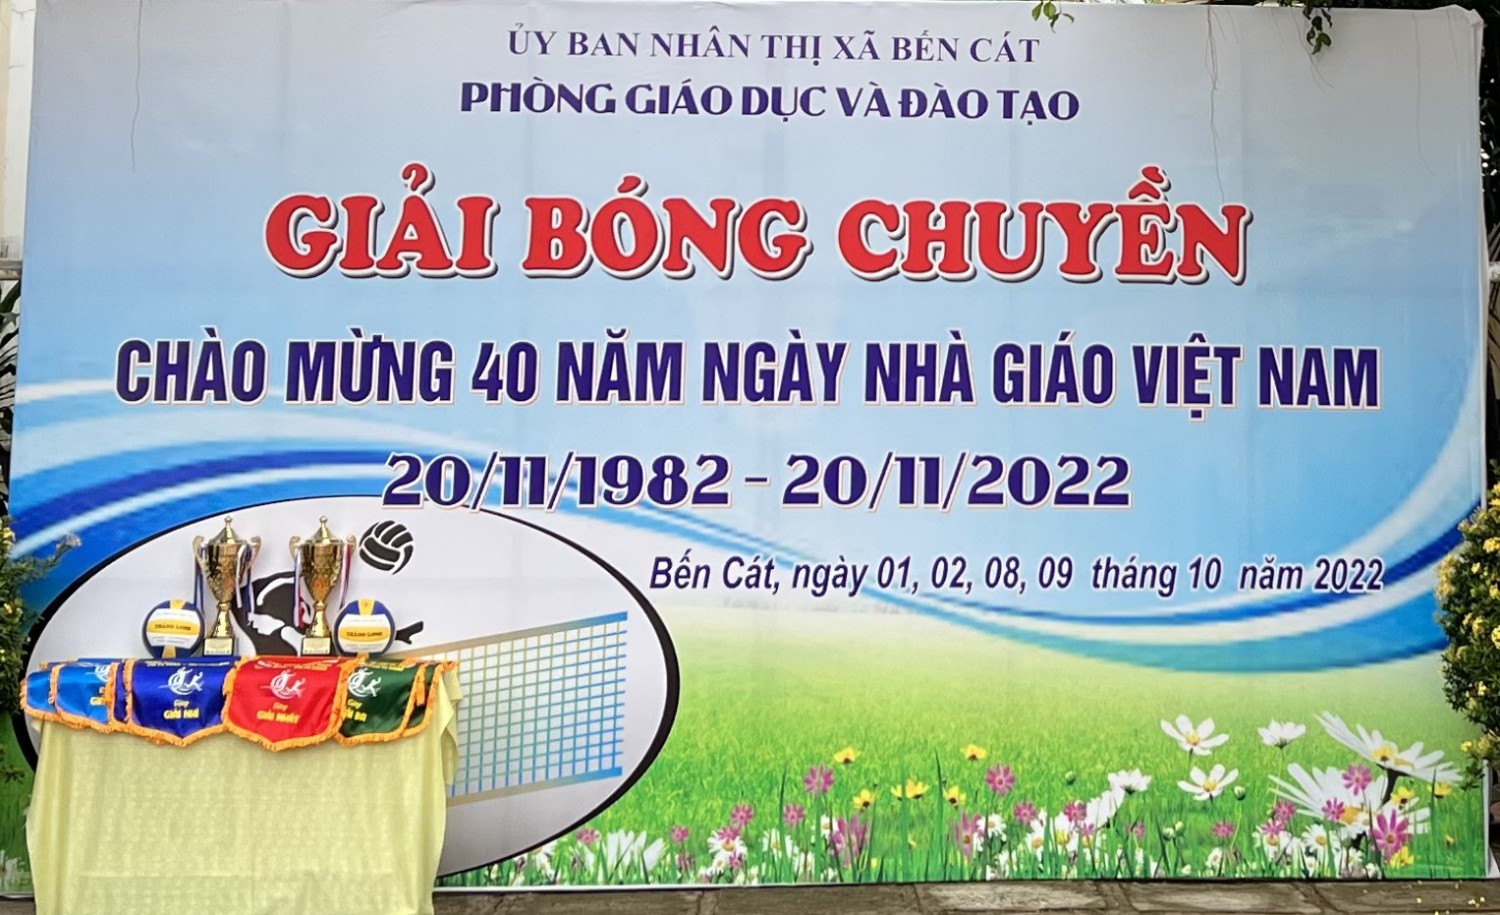 Phòng Giáo dục và Đào tạo thị xã Bến Cát đã tổ chức Lễ bế mạc  và trao giải Bóng chuyền truyền thống lần thứ nhất chào mừng kỉ niệm 40 năm ngày Nhà giáo Việt Nam (20/11/1982-20/11/2022)